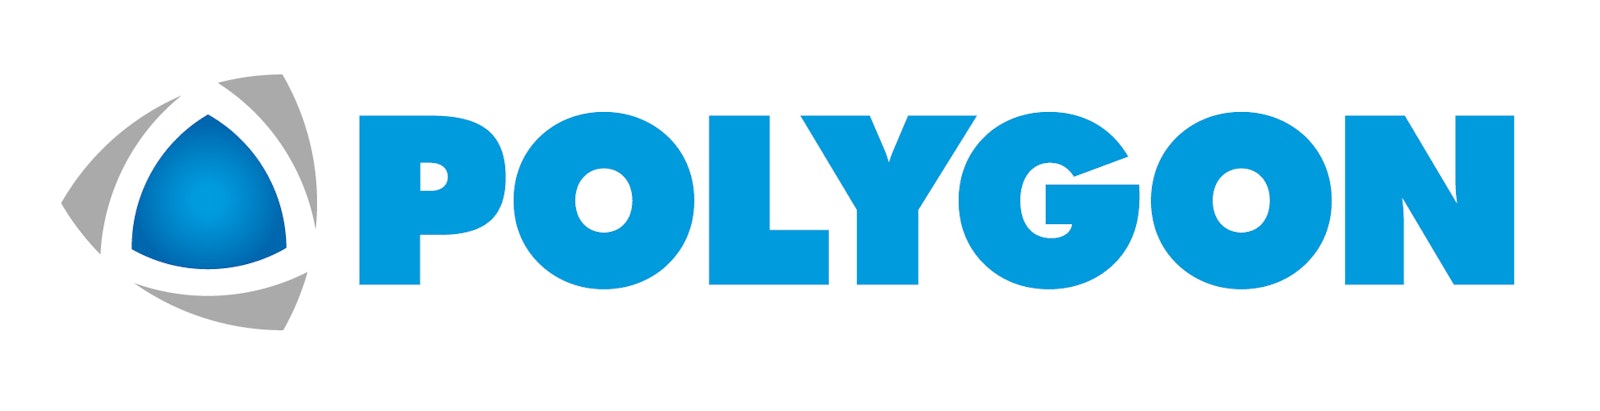 Polygon Logo Hi Res